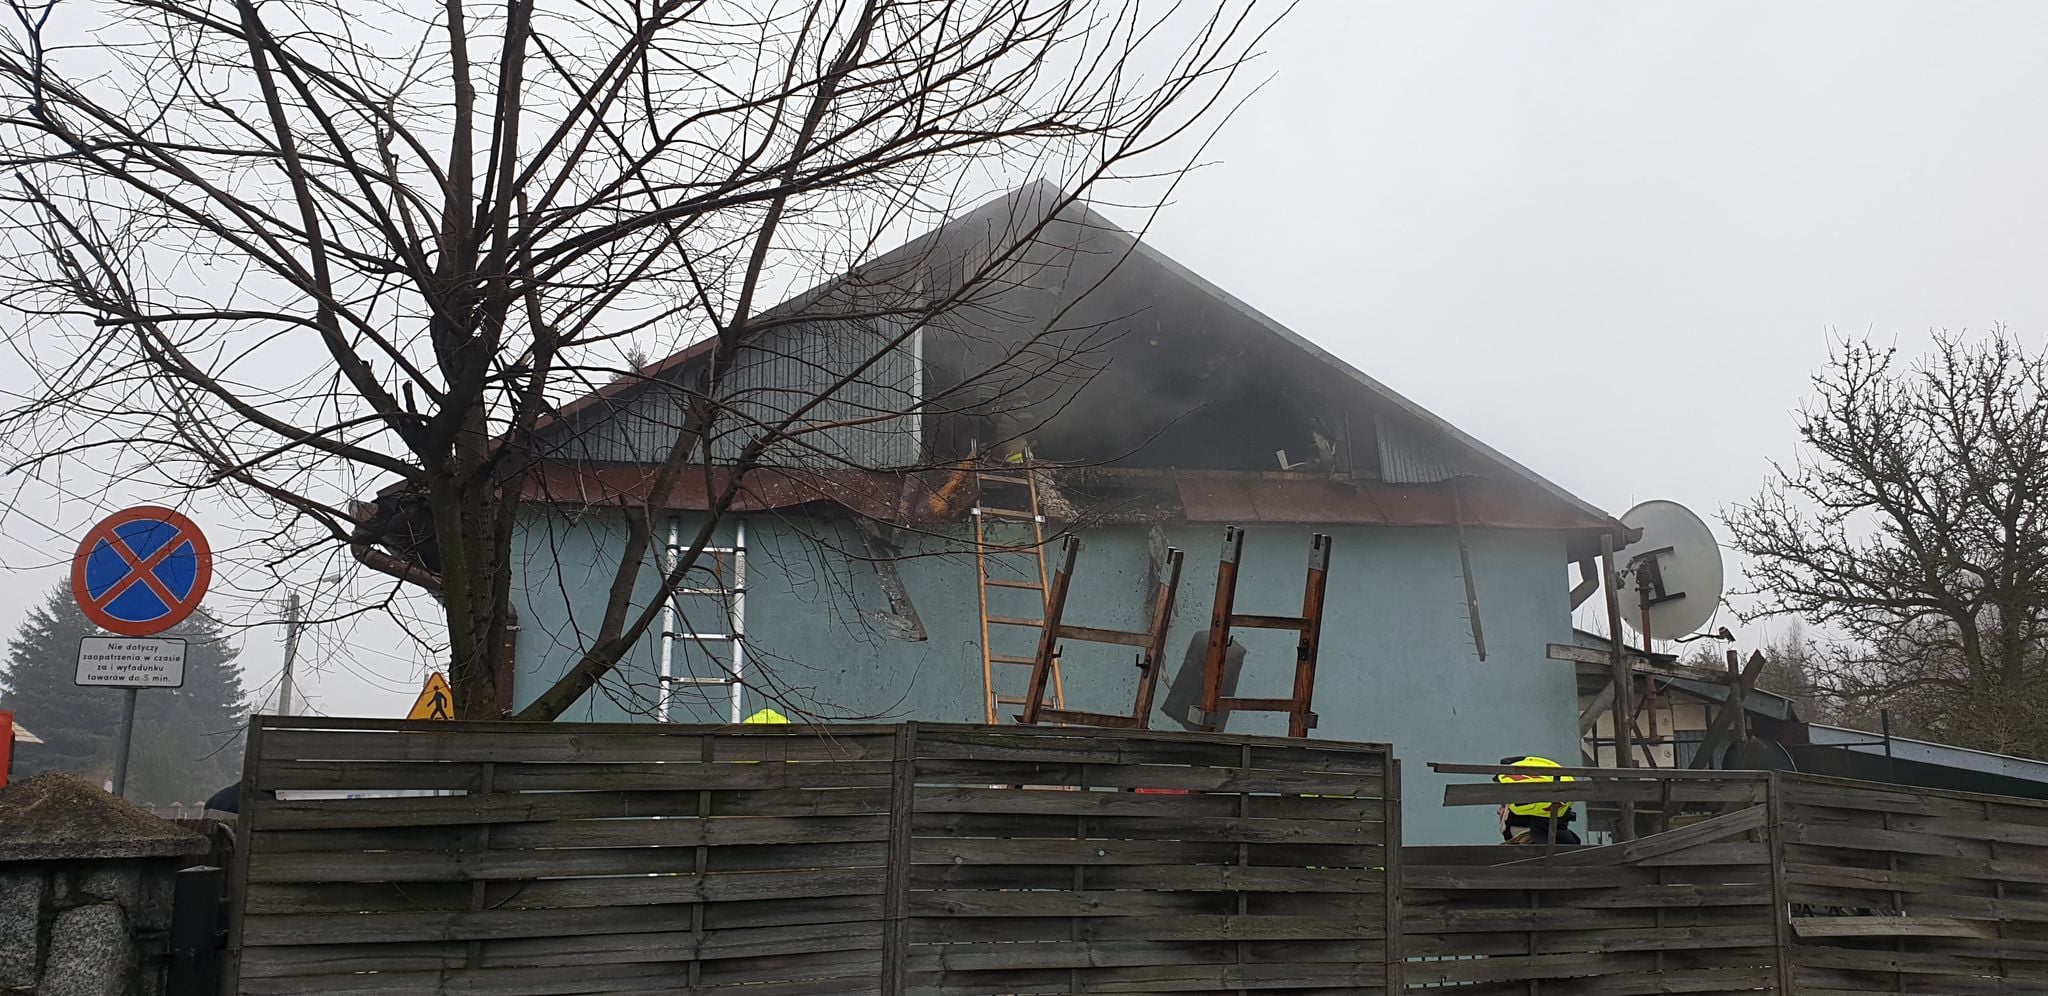 Kobieta zobaczyła dym wydobywający się z sąsiedniego budynku. Płonęły zgromadzone na strychu „skarby” (zdjęcia)